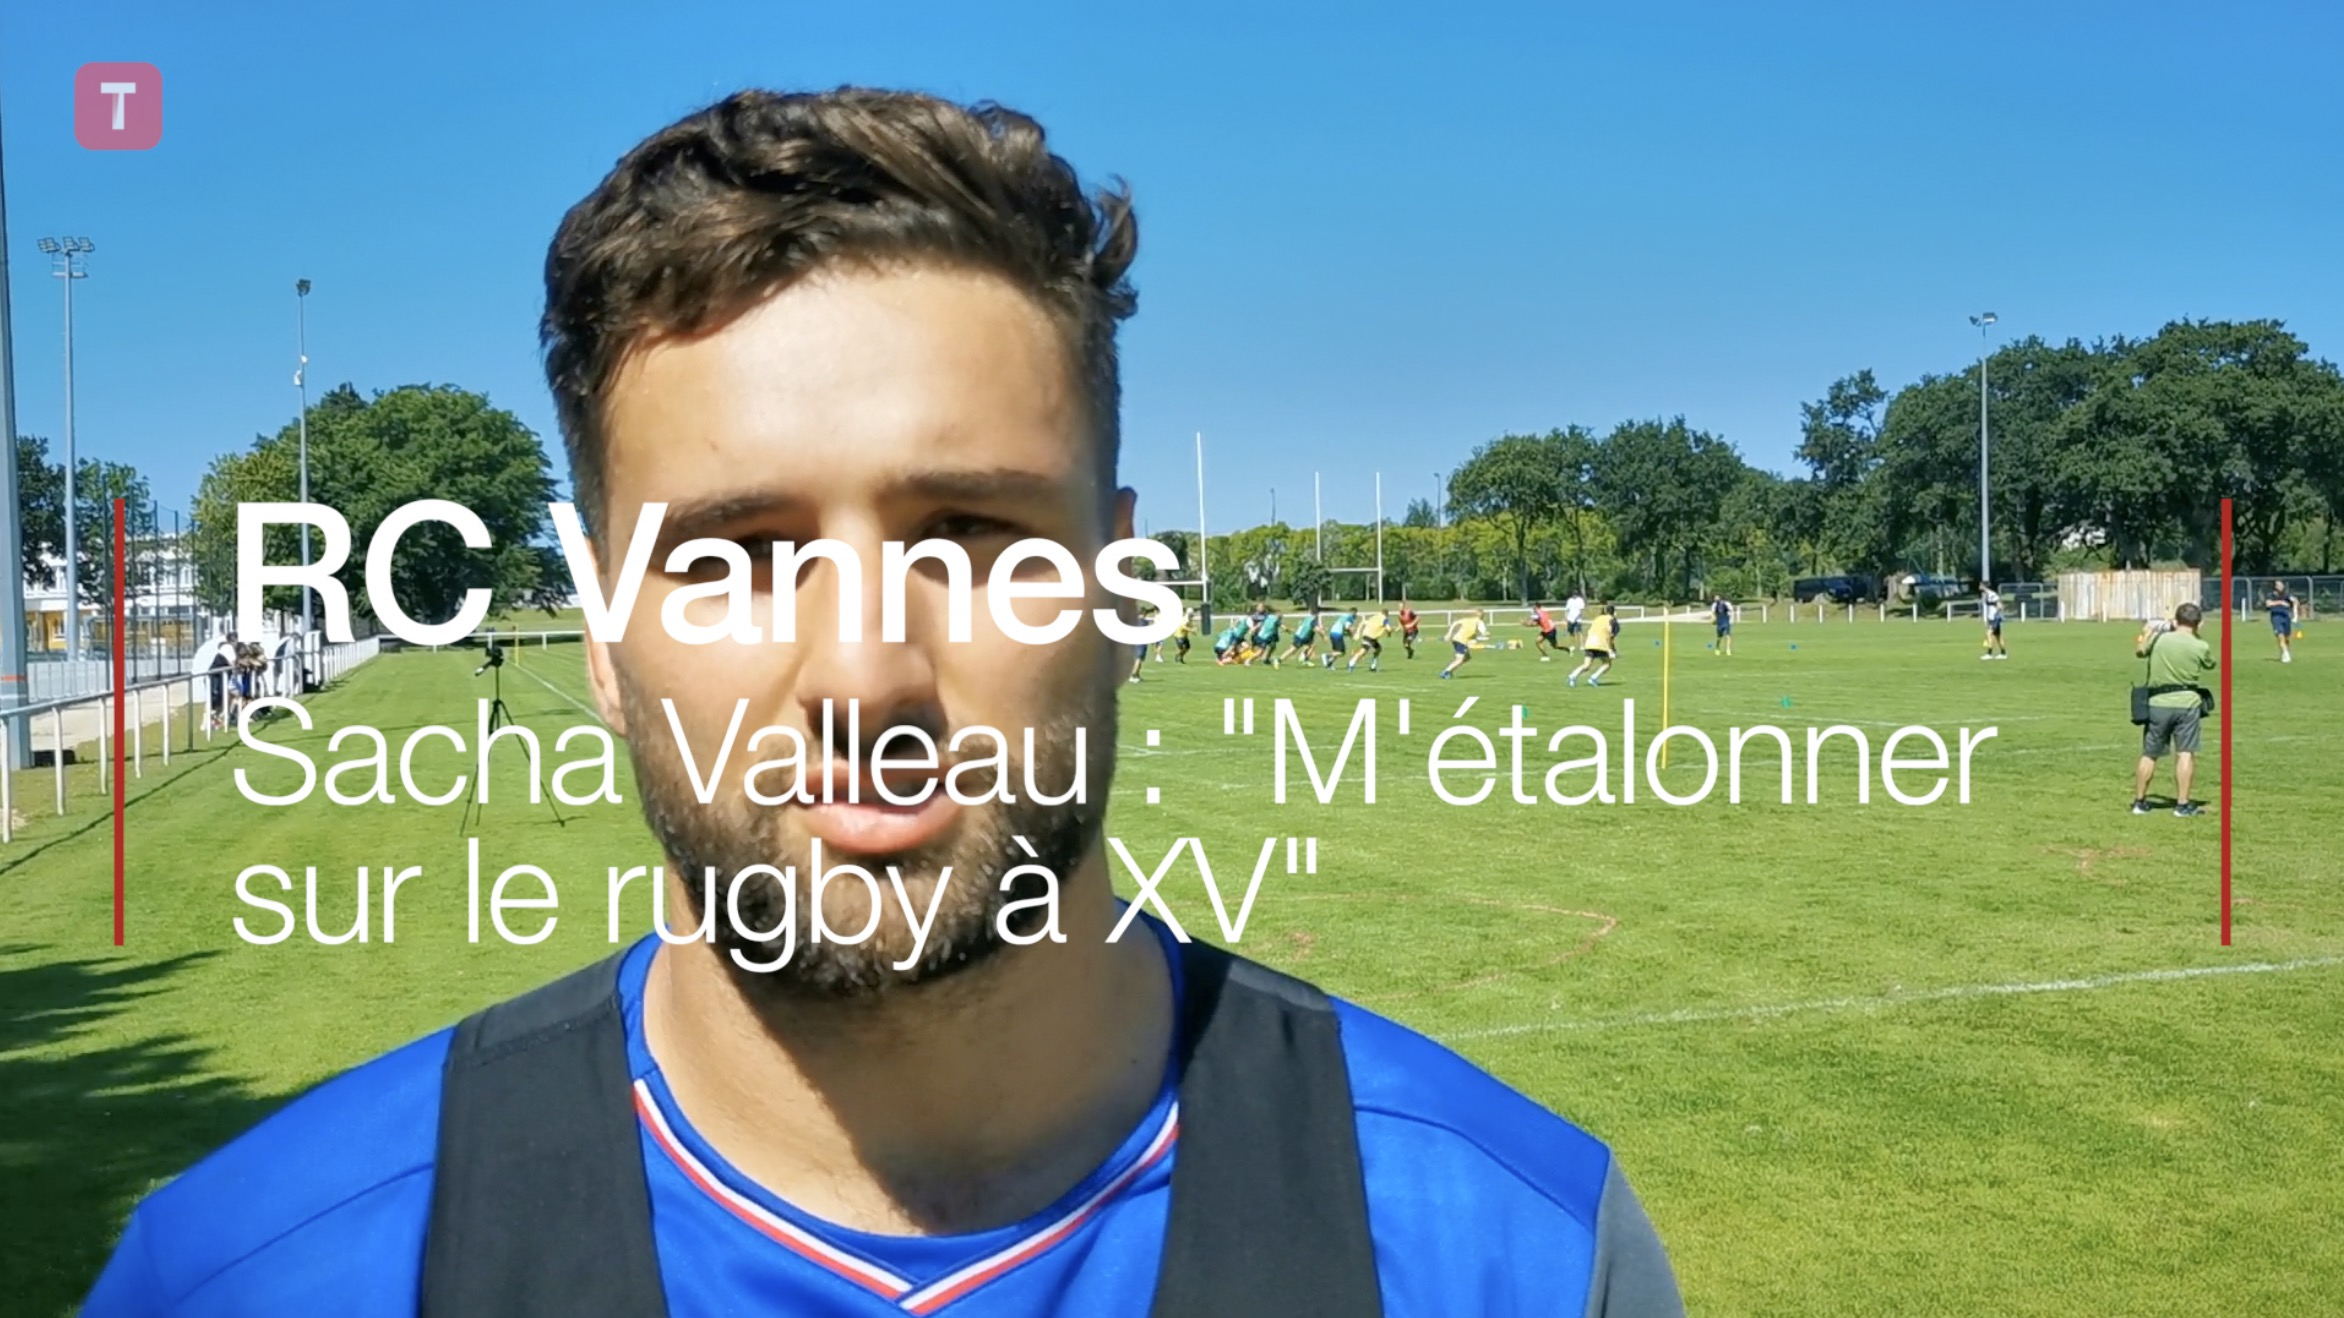 RC Vannes. Sacha Valleau : "M'étalonner sur le rugby à XV" (Le Télégramme)